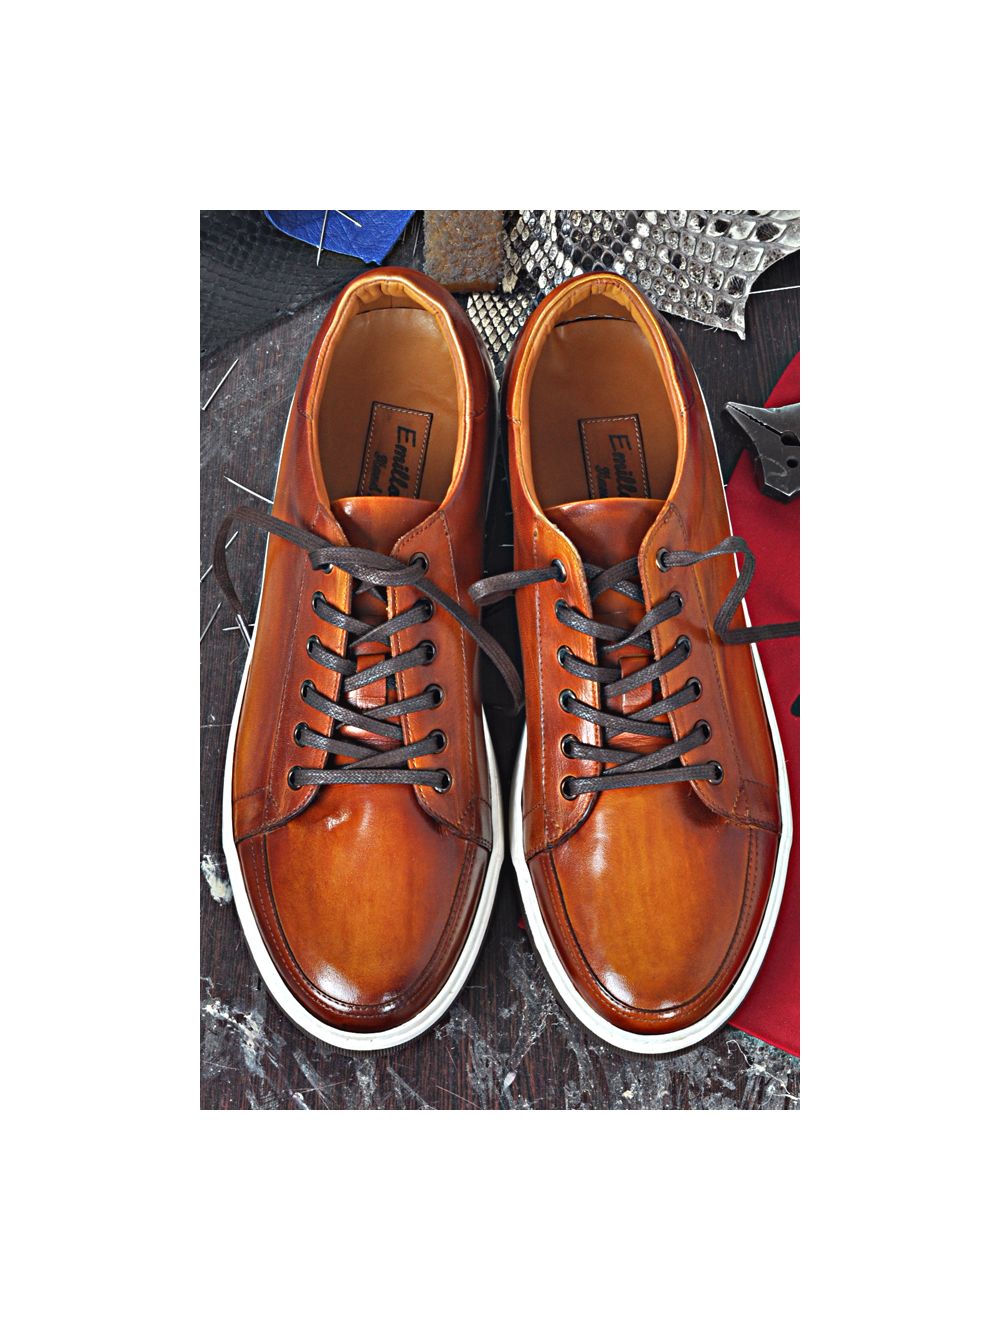 COLAN | Italian Handmade Sneaker Shoe Online for Men by